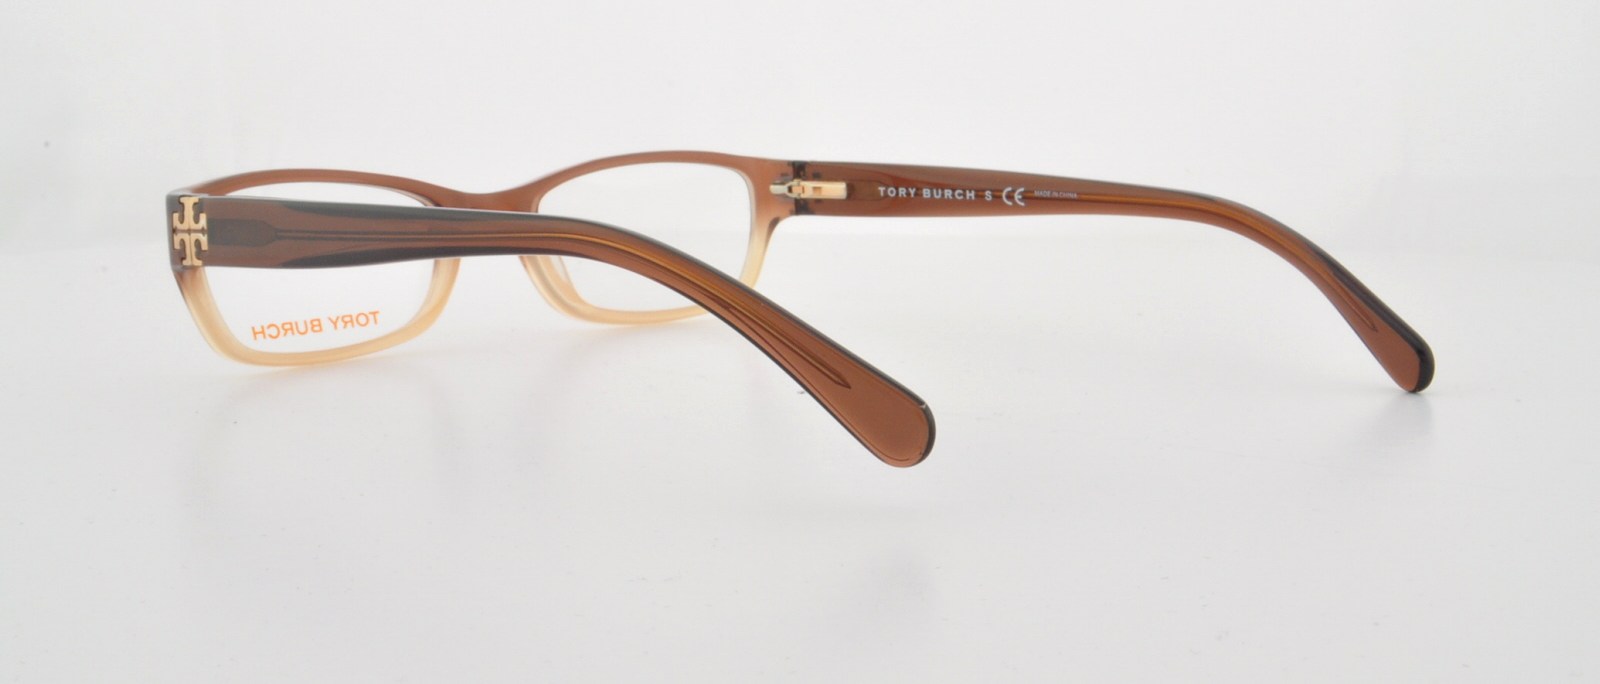 Designer Frames Outlet. Tory Burch Eyeglasses TY2003